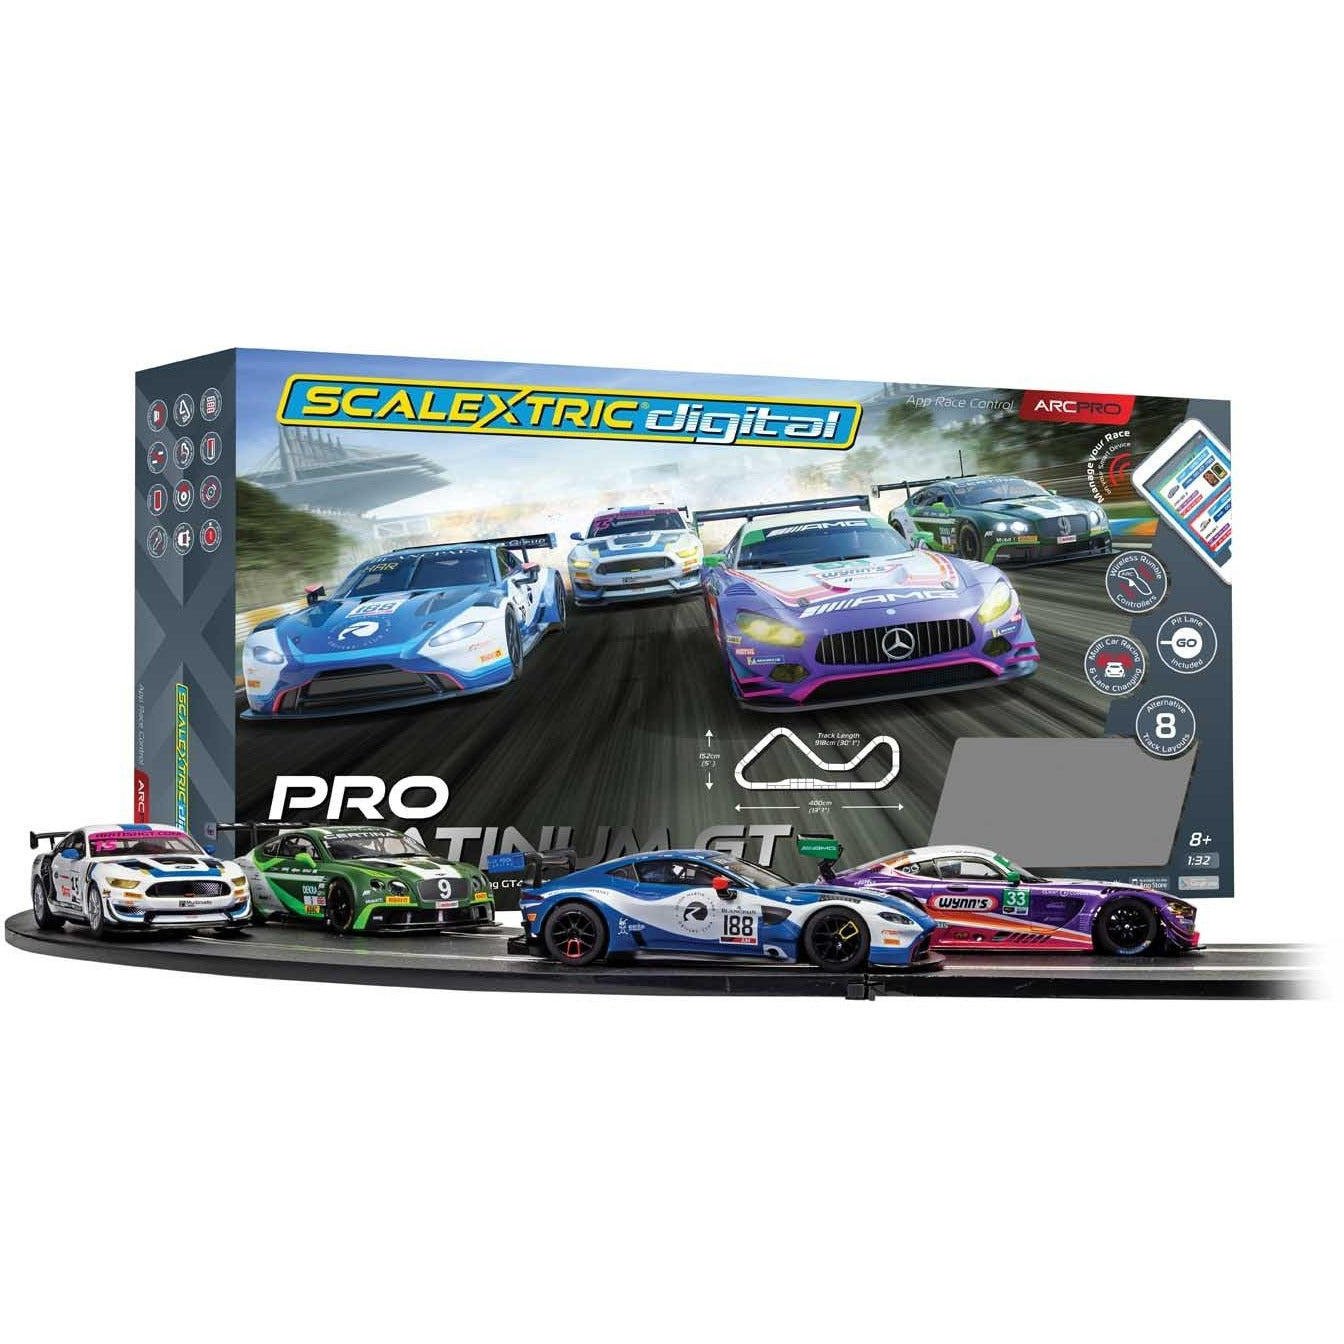 Pro Platinum GT 1:32 Scale Race Car Set